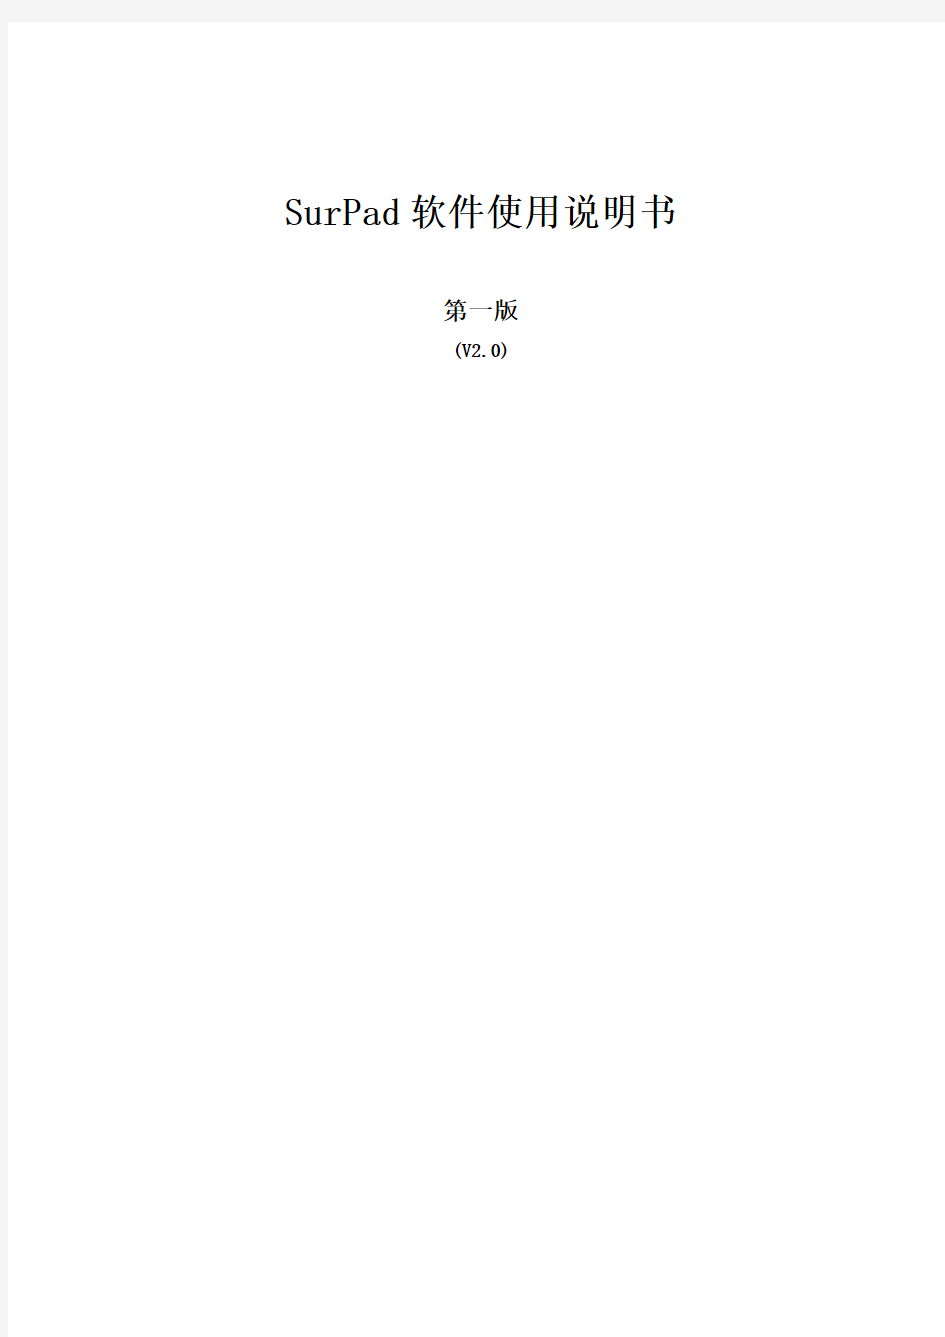 surpad软件说明书2013-11-11